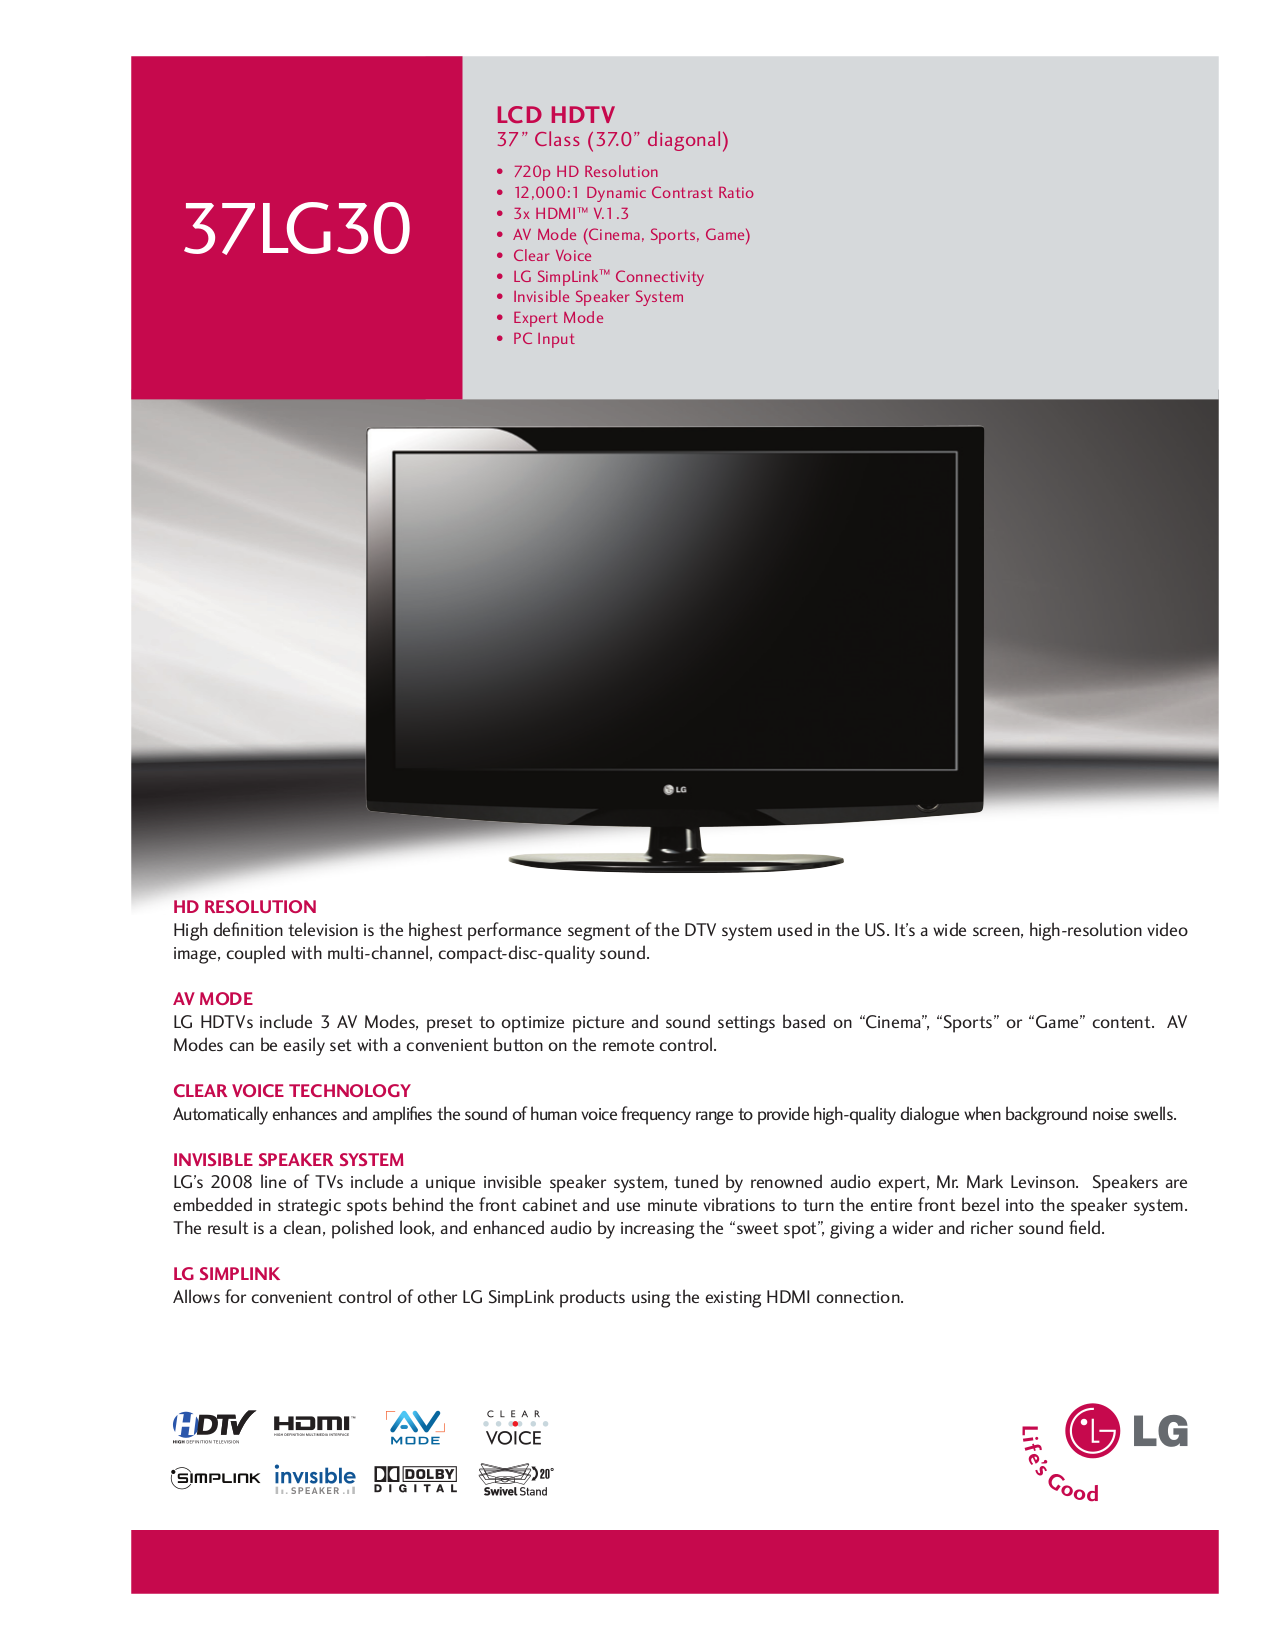 lg tv service manual pdf free download